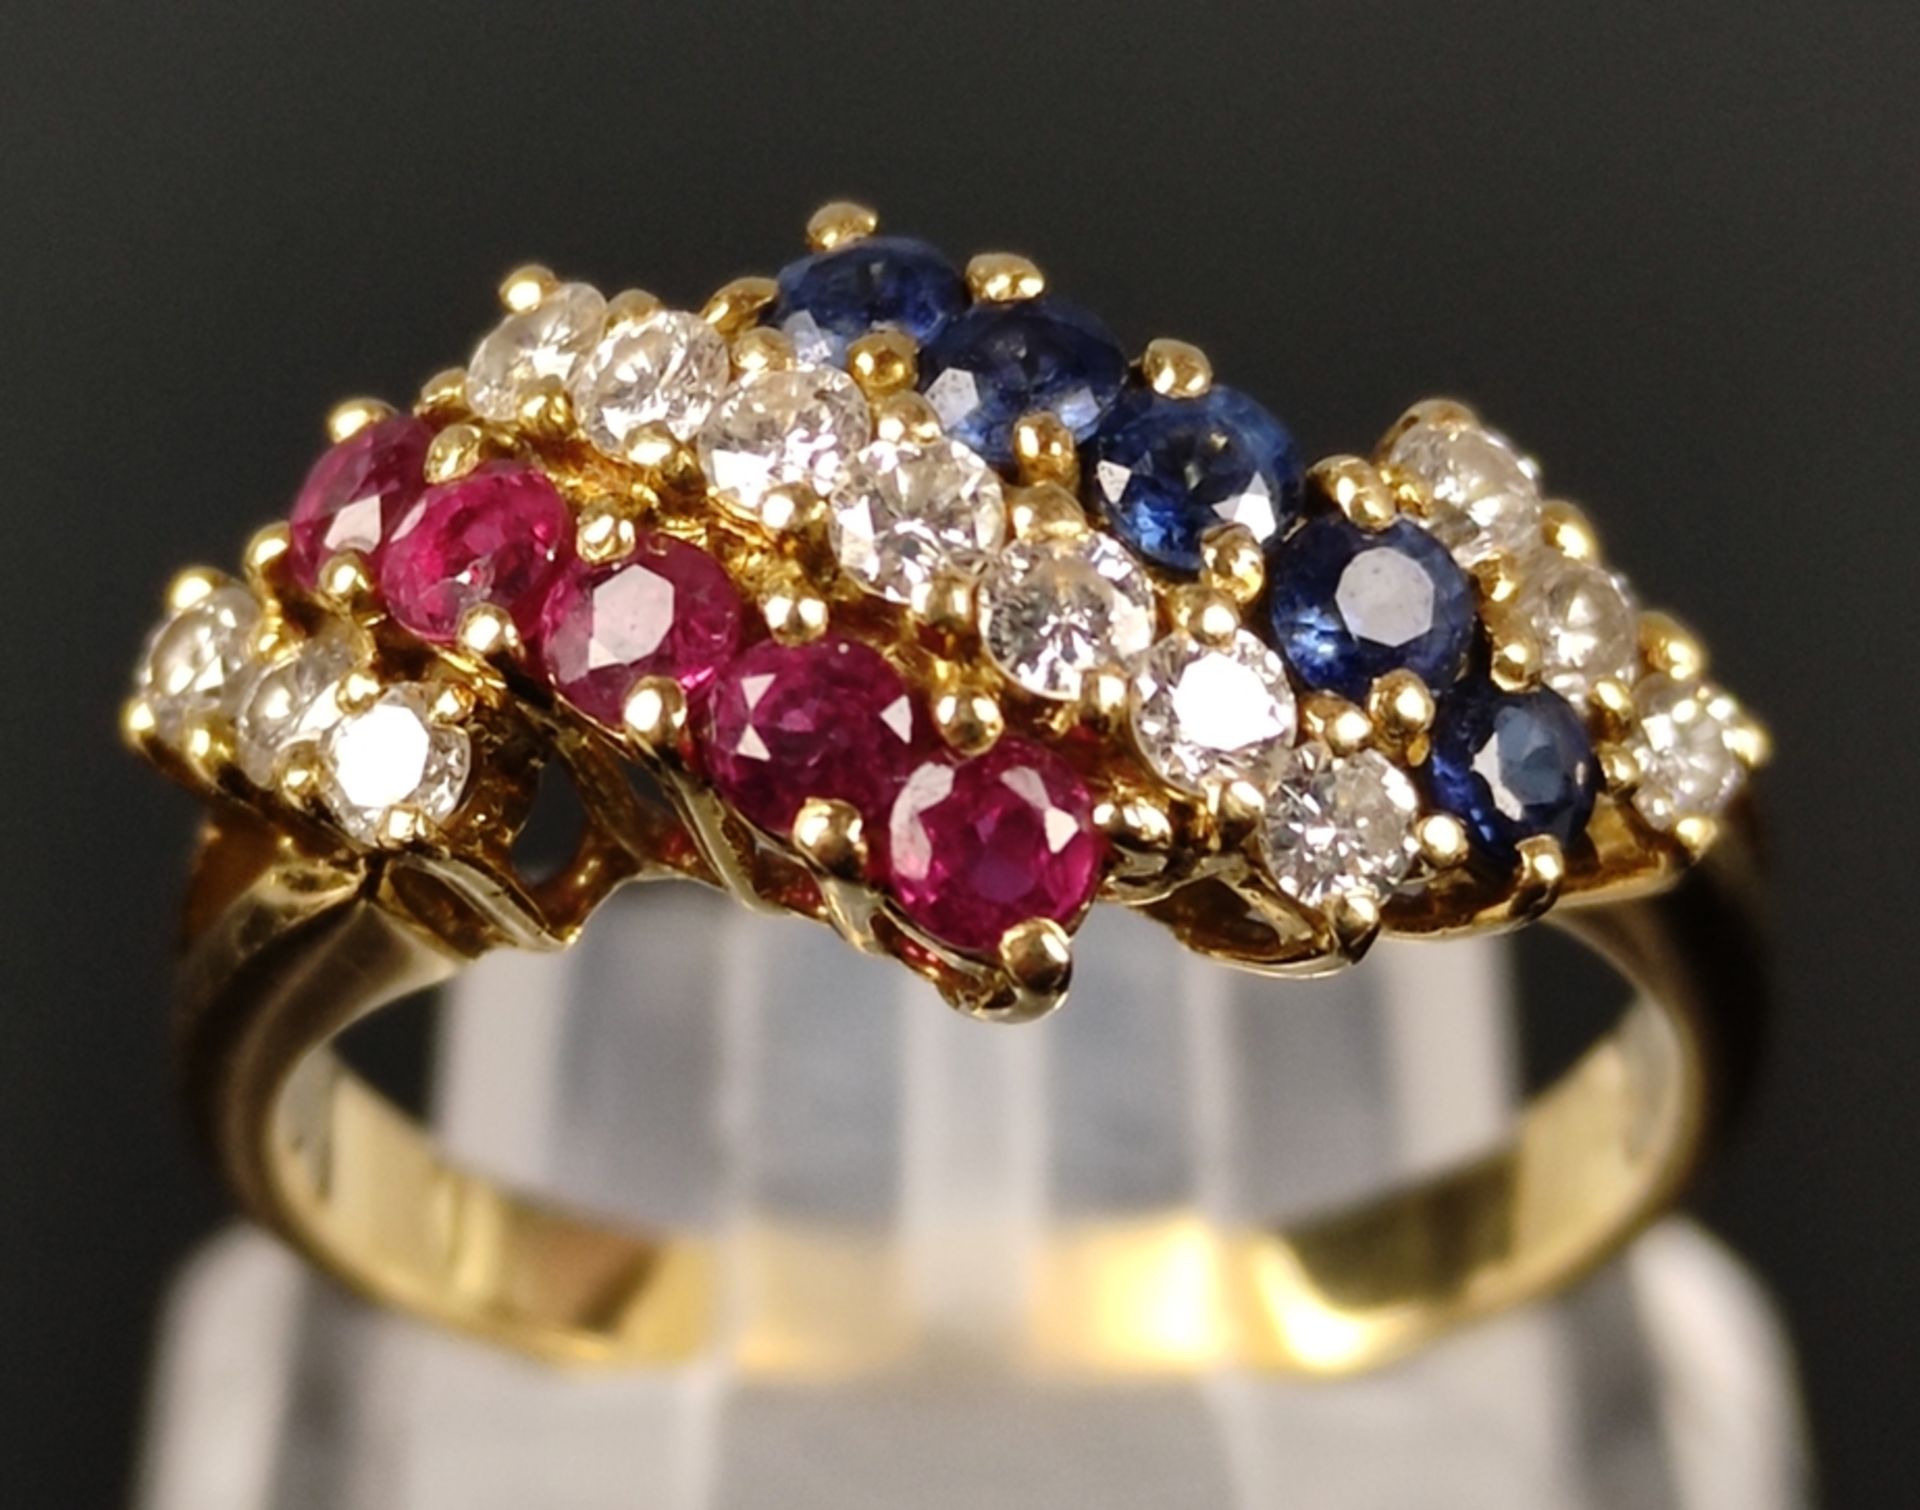 Ring, besetzt mit 13 Brillanten, 5 Saphiren und 5 Rubinen, 750/18K Gelbgold, 3,9g, Ringgröße 55 - Bild 3 aus 4